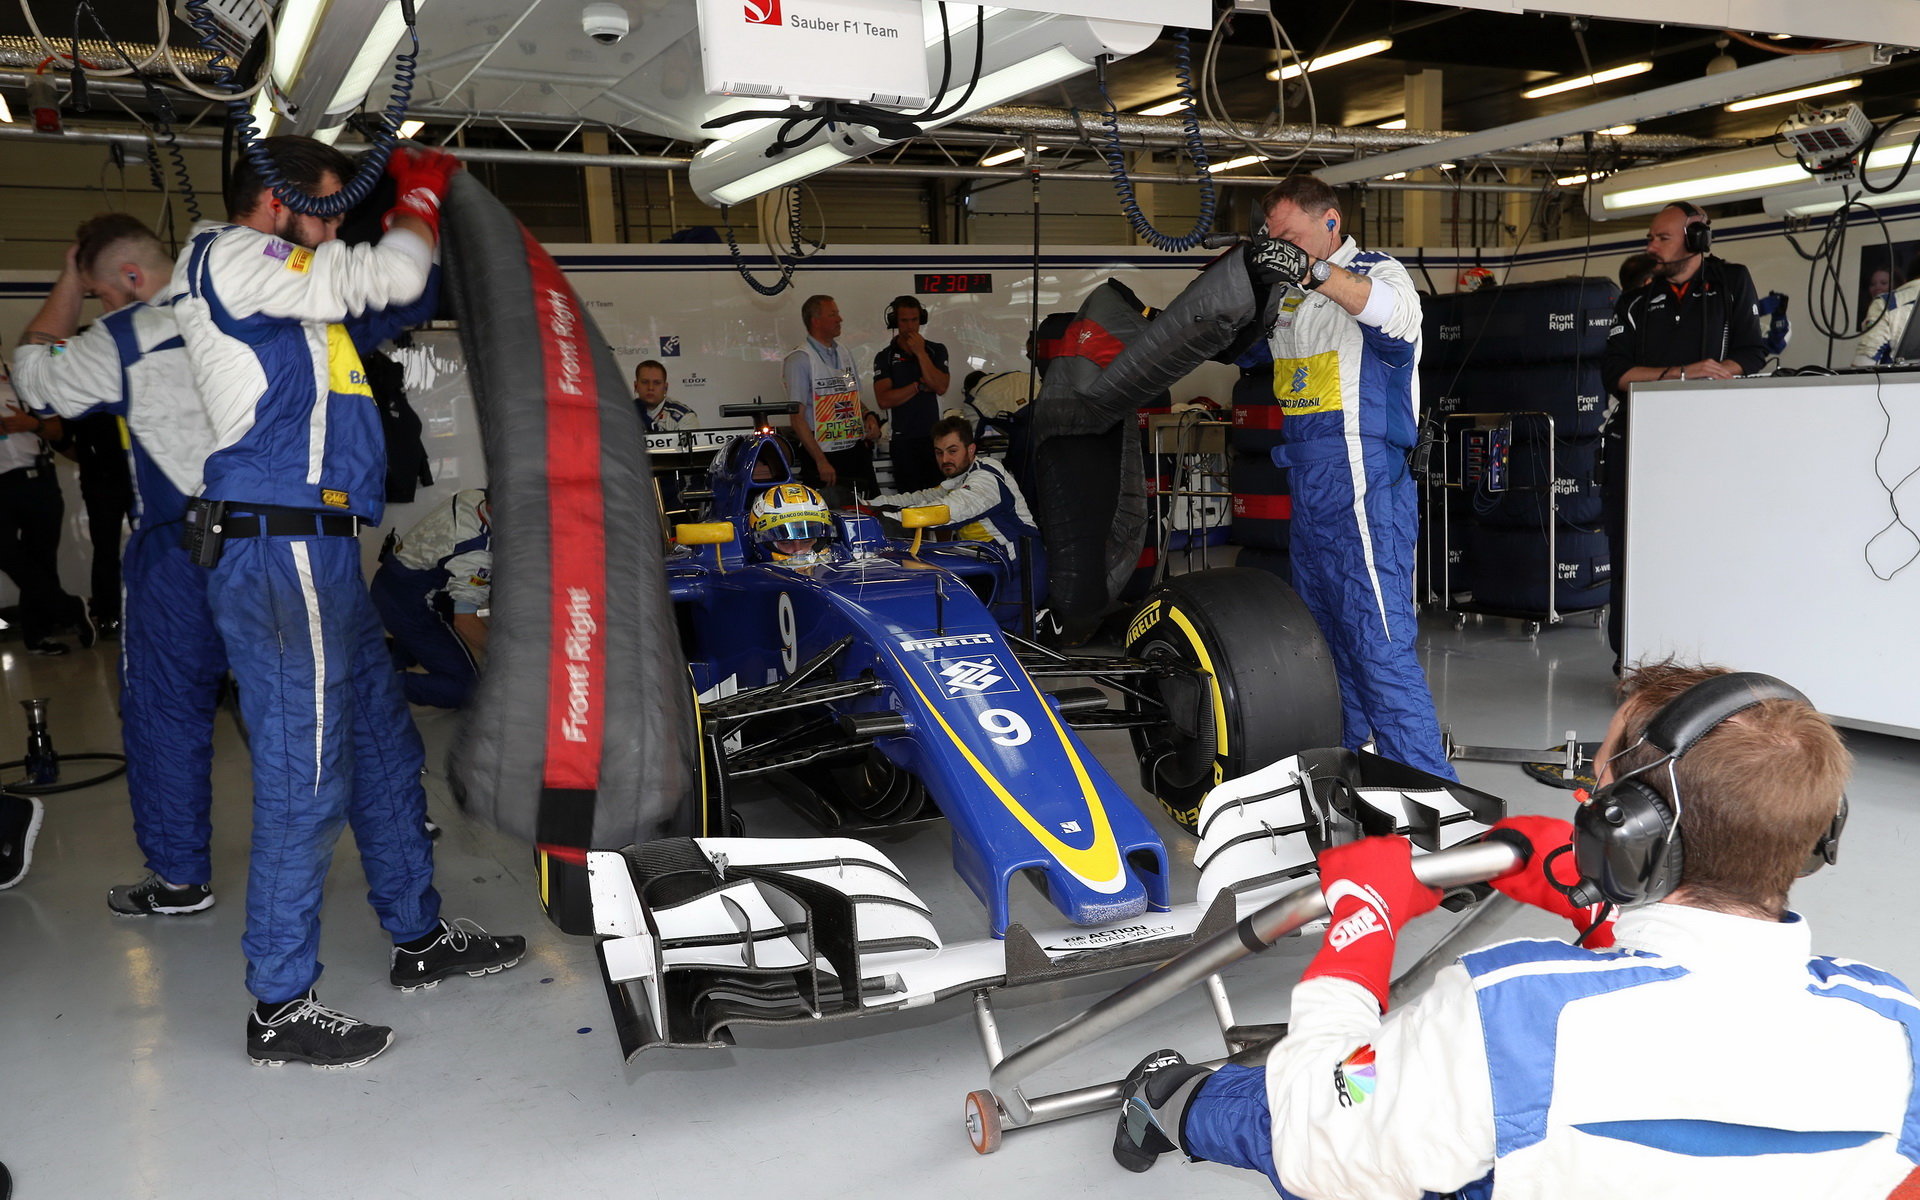 Sauber zvolil poněkud jiné testy - vyzkoušel zadní křídlo v tréninku na GP